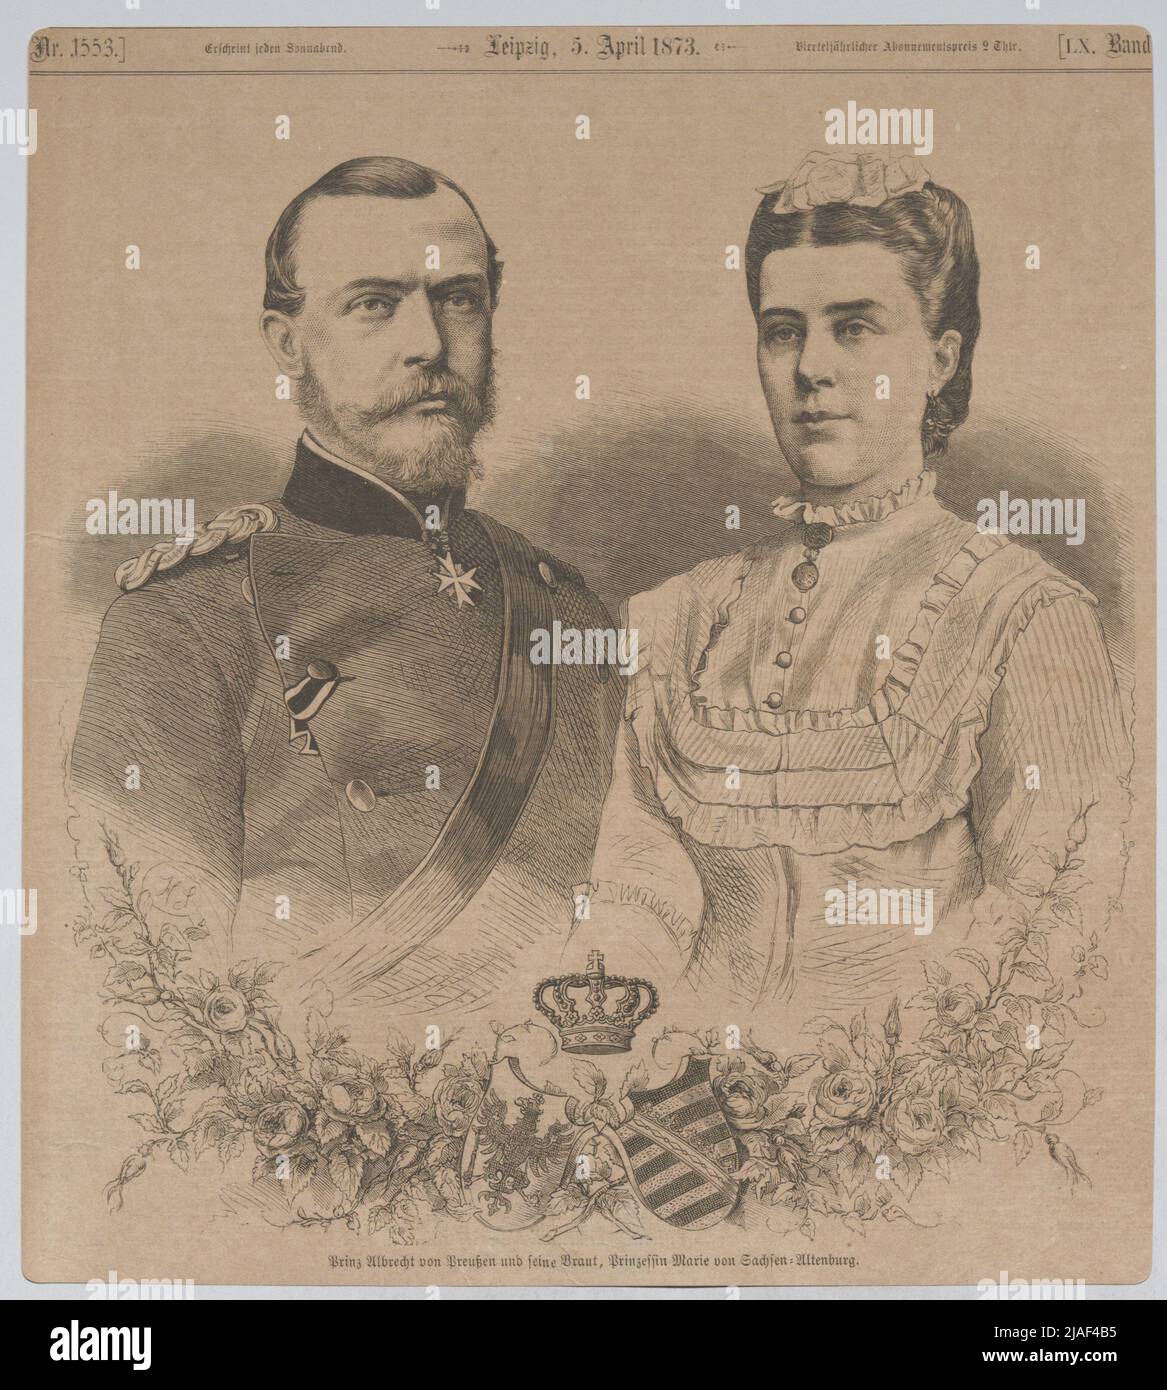 Prince Albrecht von Prussia and his bride, Princess Marie von Sachsen-Altenburg (from 'Illustrirte Zeitung', Leipzig). Unknown Stock Photo